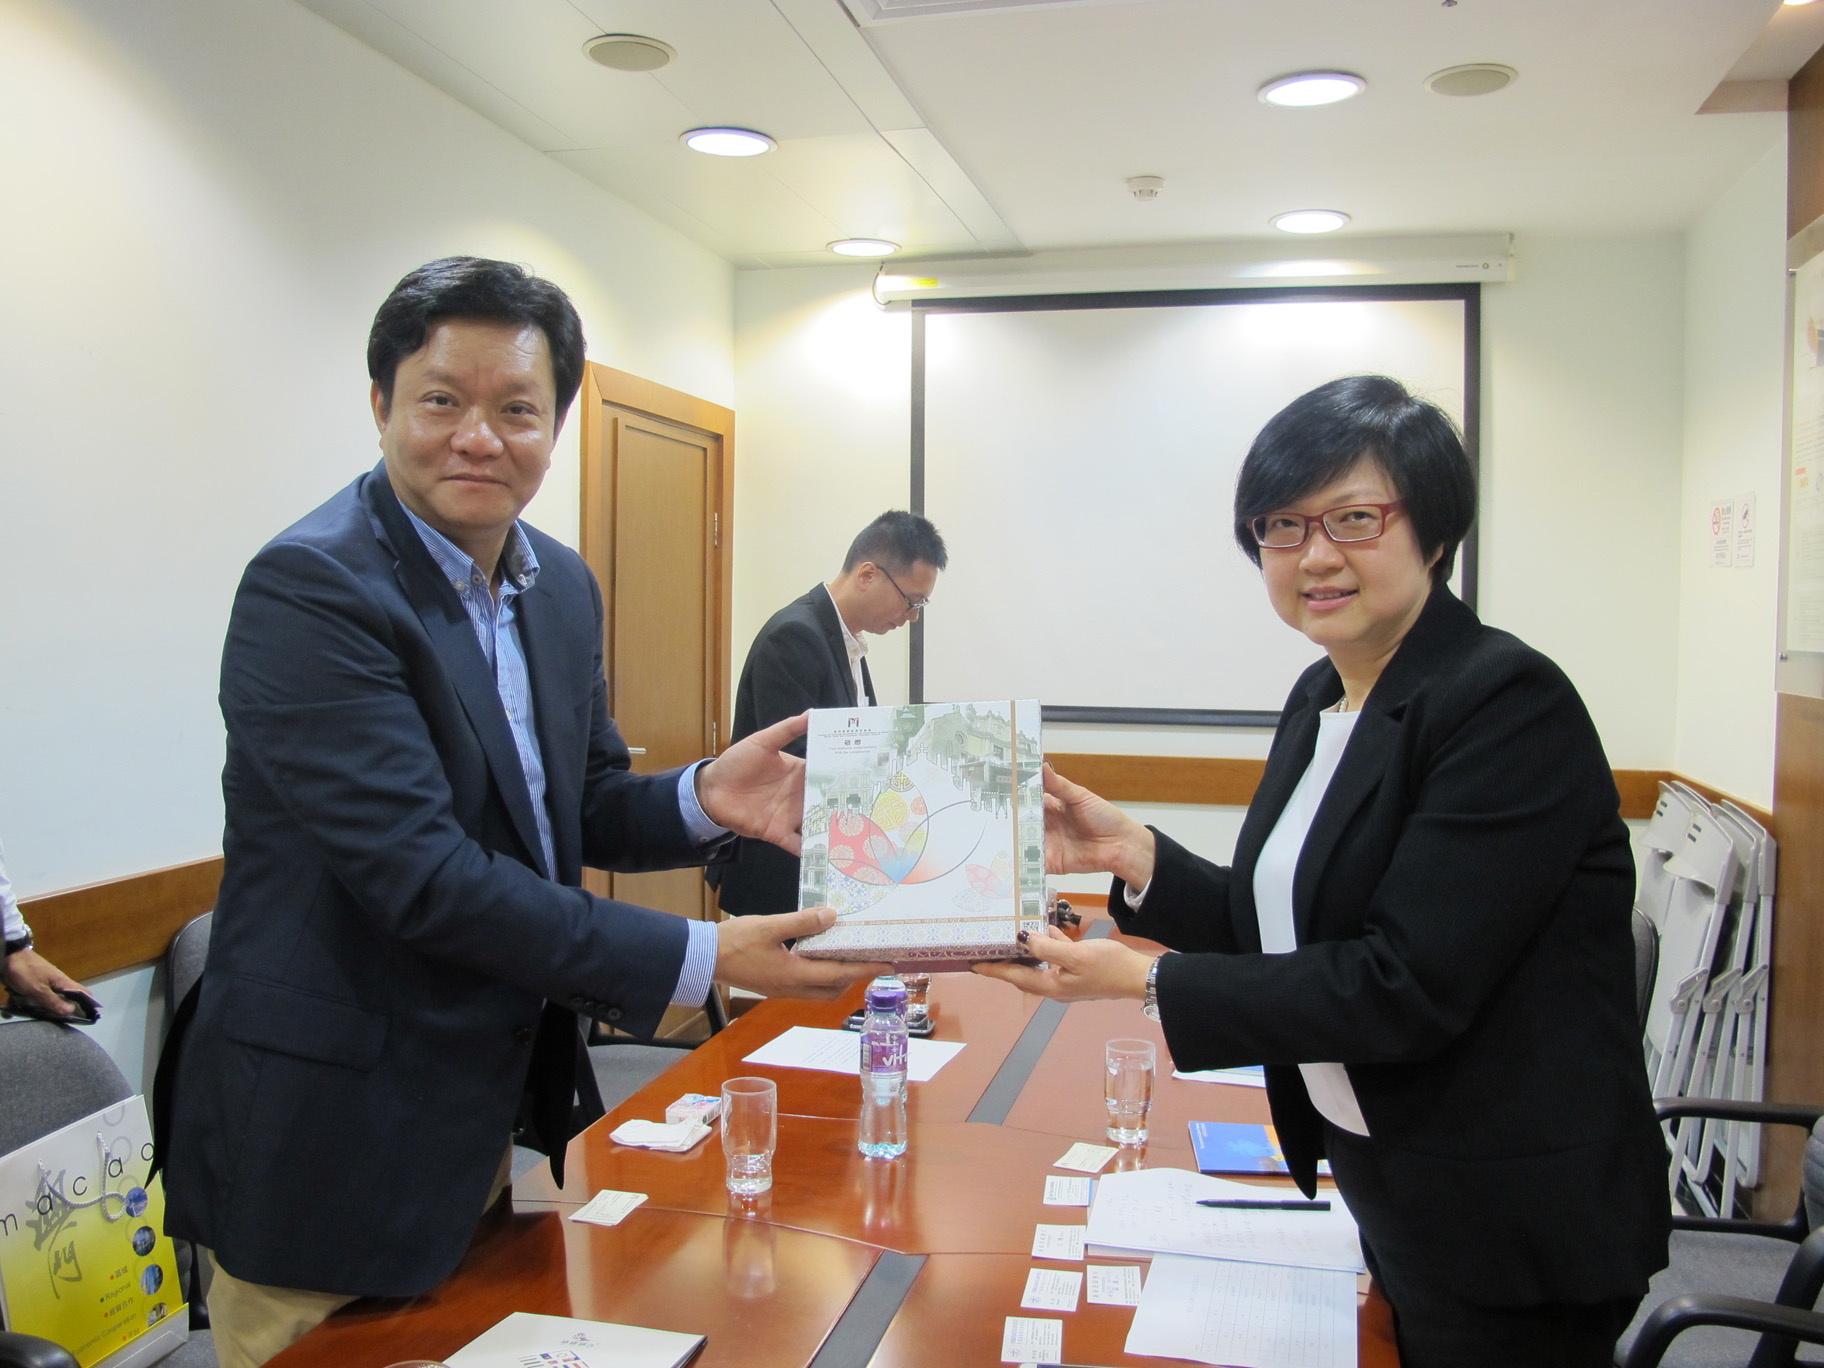 吴爱华执行委员向到访本局的海南省商务厅副厅长姚磊致送纪念品 (2016年3月3日)